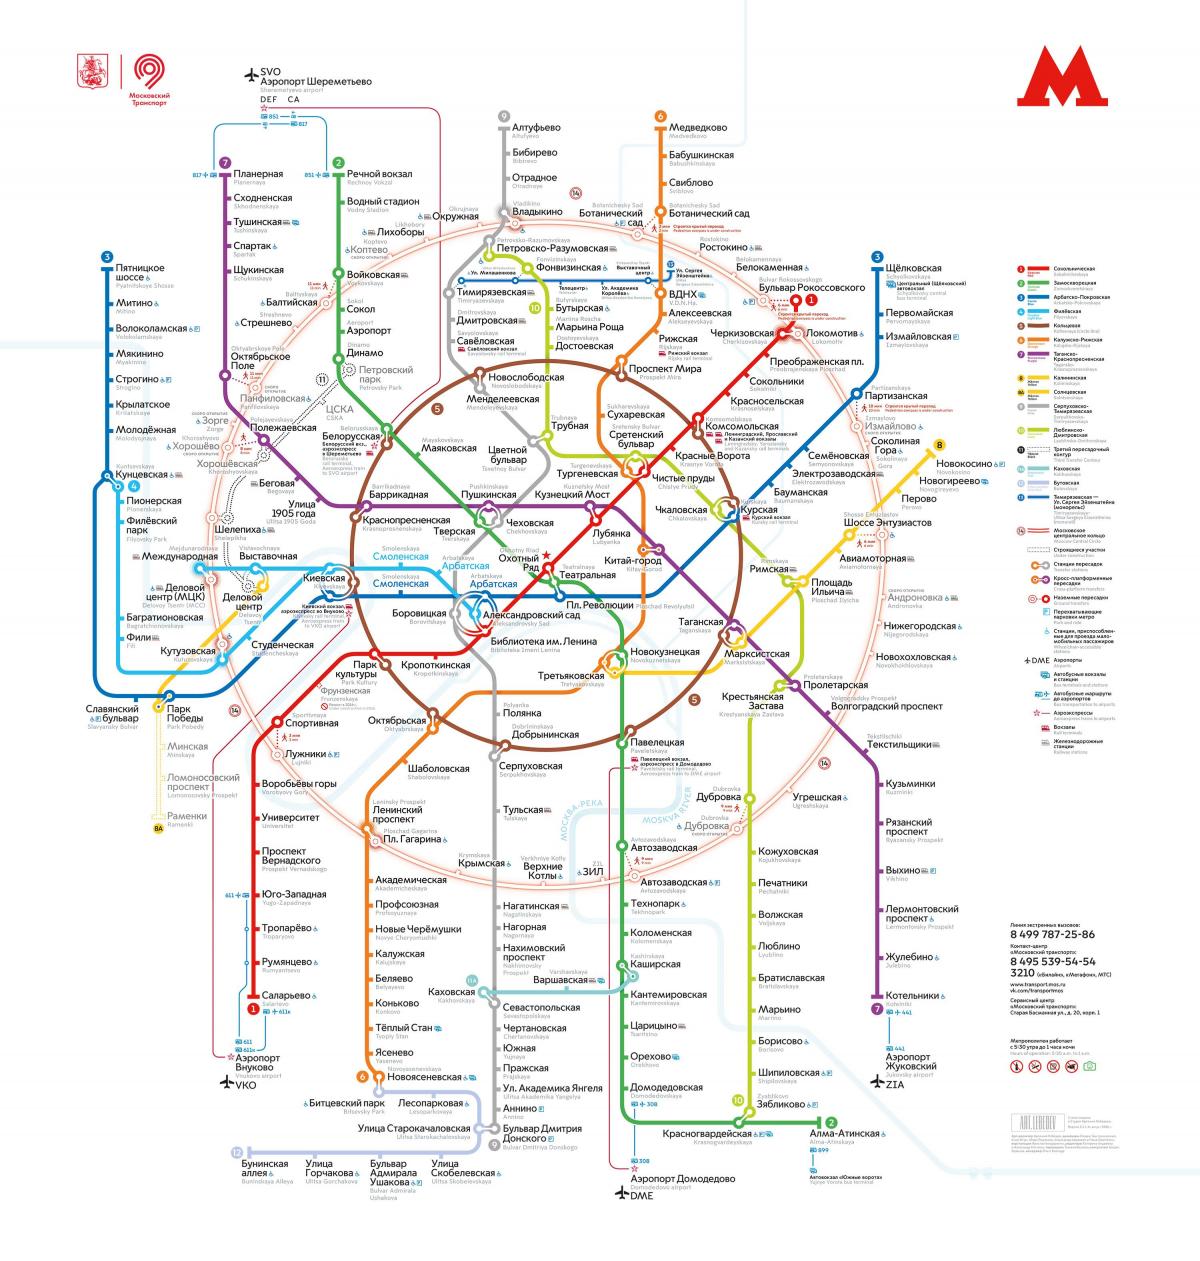 मेट्रो मास्को का नक्शा